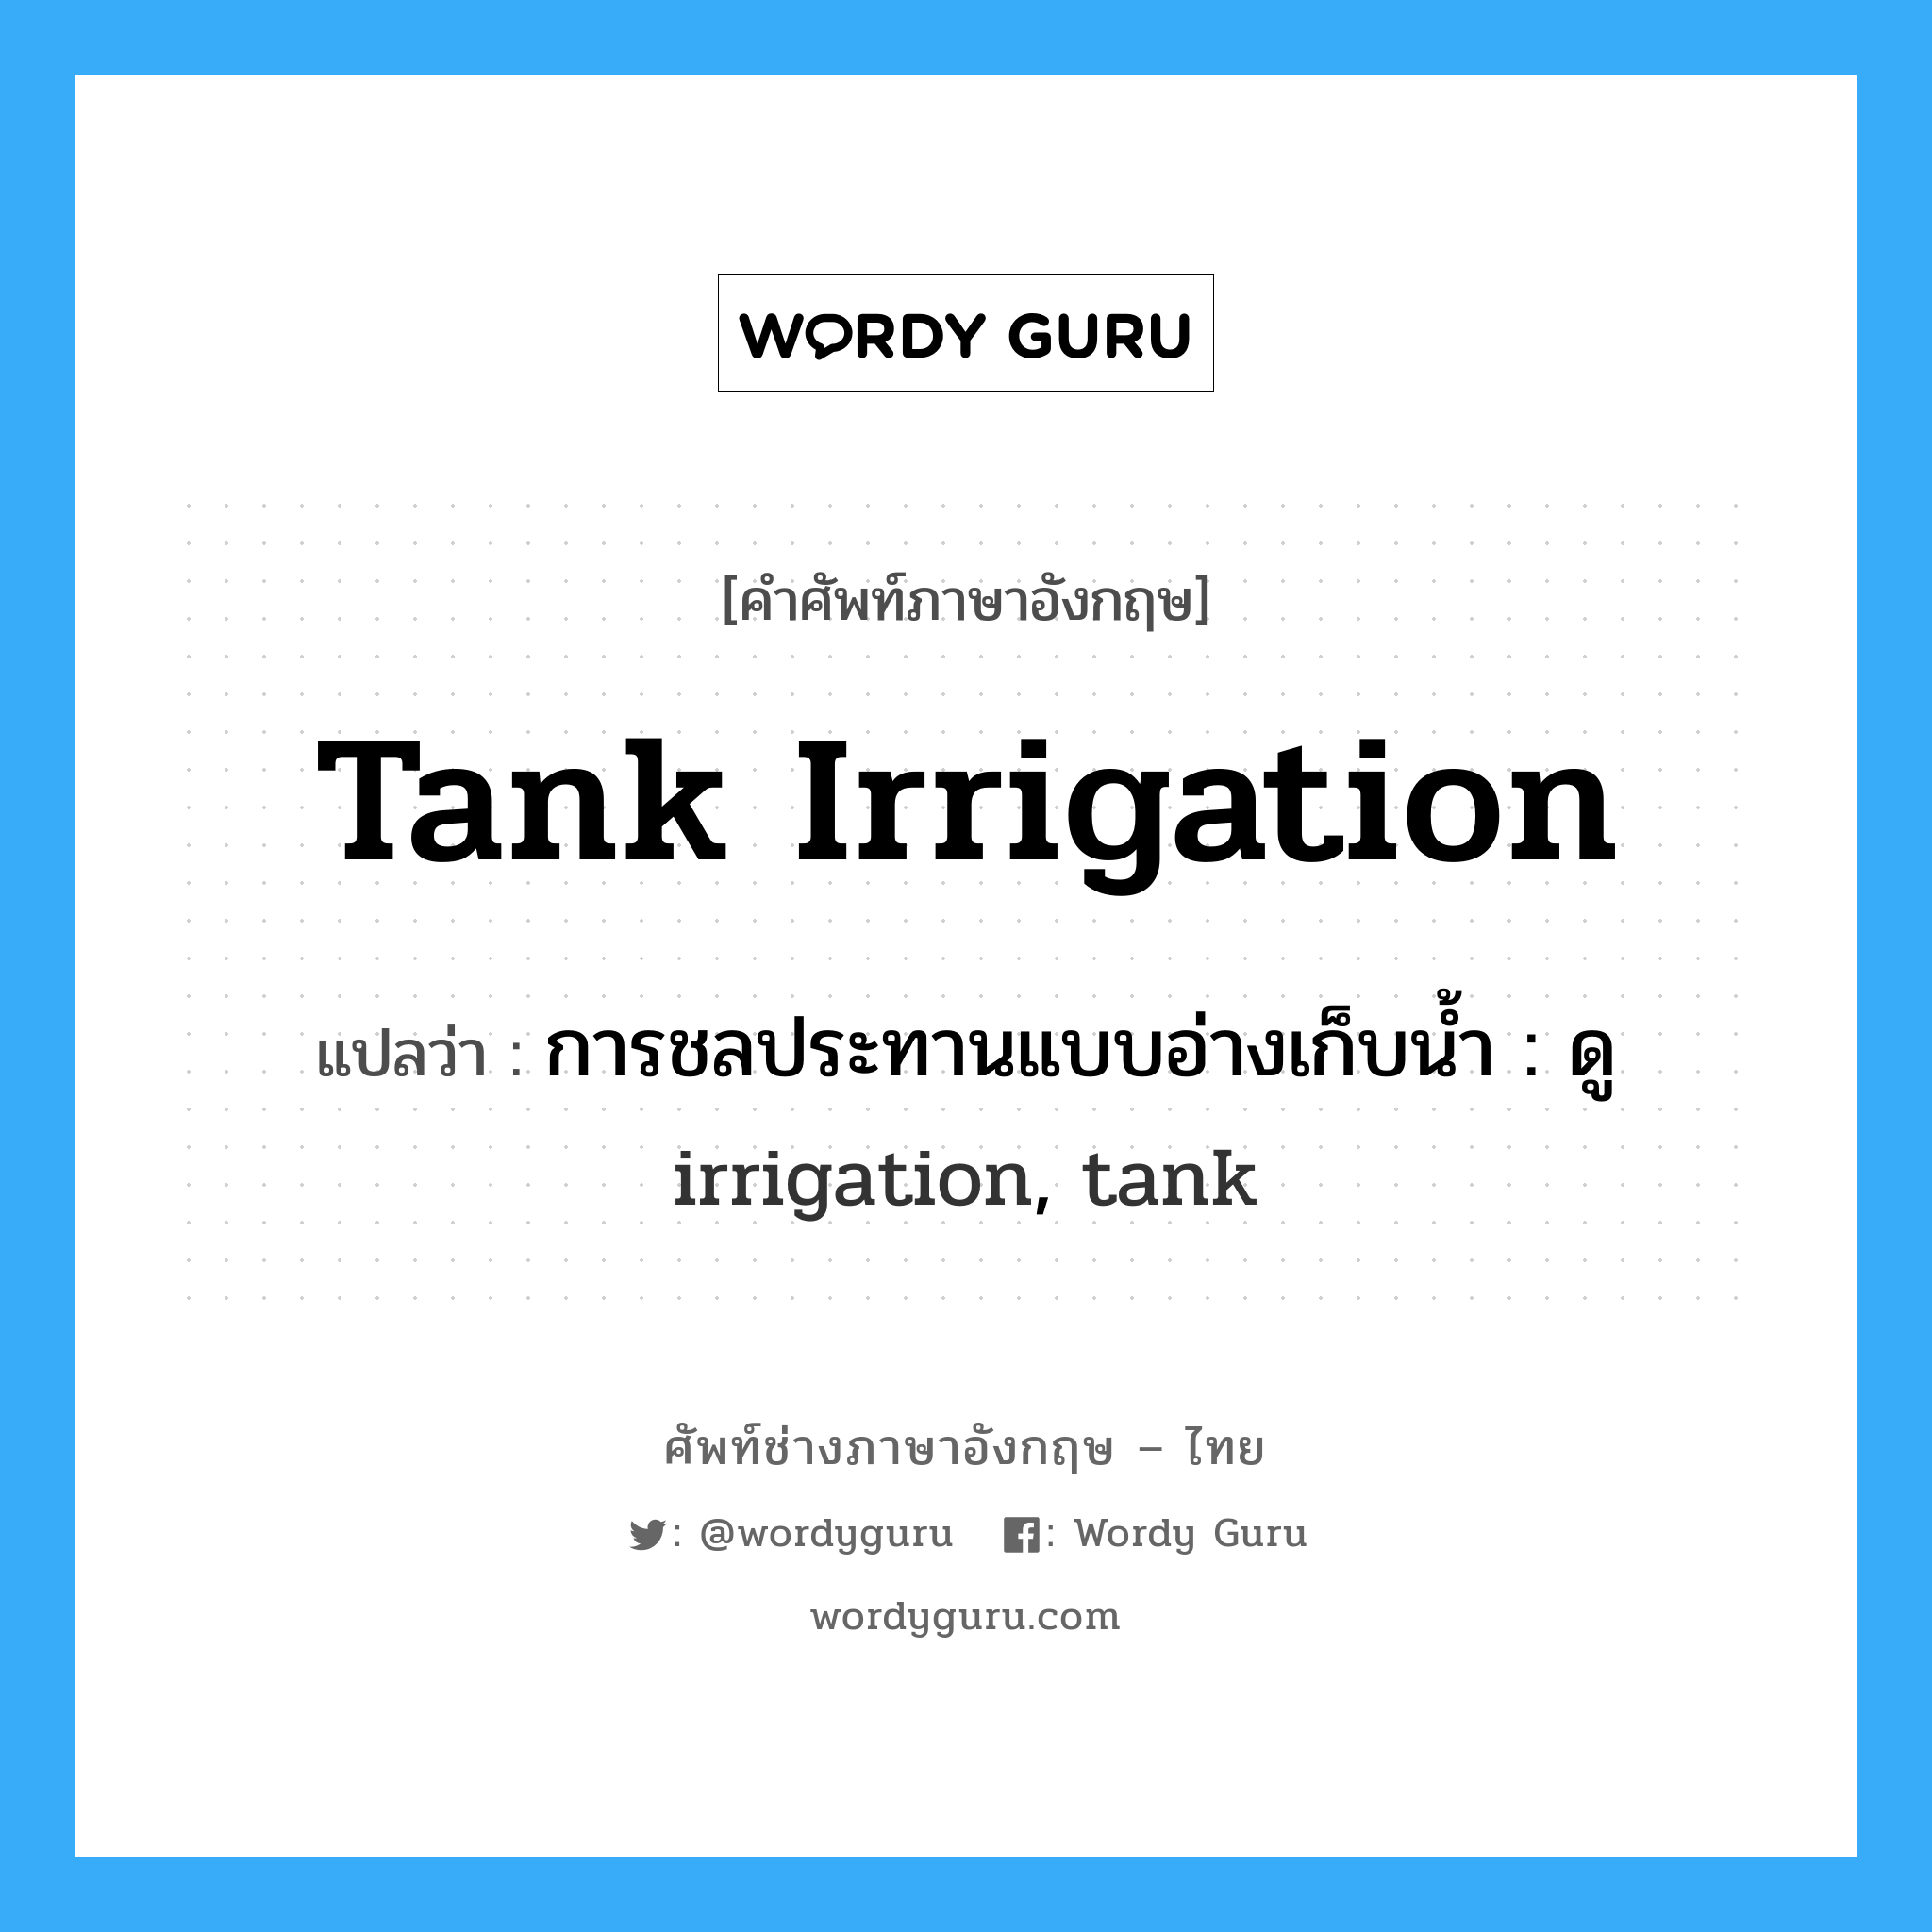 การชลประทานแบบอ่างเก็บน้ำ : ดู irrigation, tank ภาษาอังกฤษ?, คำศัพท์ช่างภาษาอังกฤษ - ไทย การชลประทานแบบอ่างเก็บน้ำ : ดู irrigation, tank คำศัพท์ภาษาอังกฤษ การชลประทานแบบอ่างเก็บน้ำ : ดู irrigation, tank แปลว่า tank irrigation